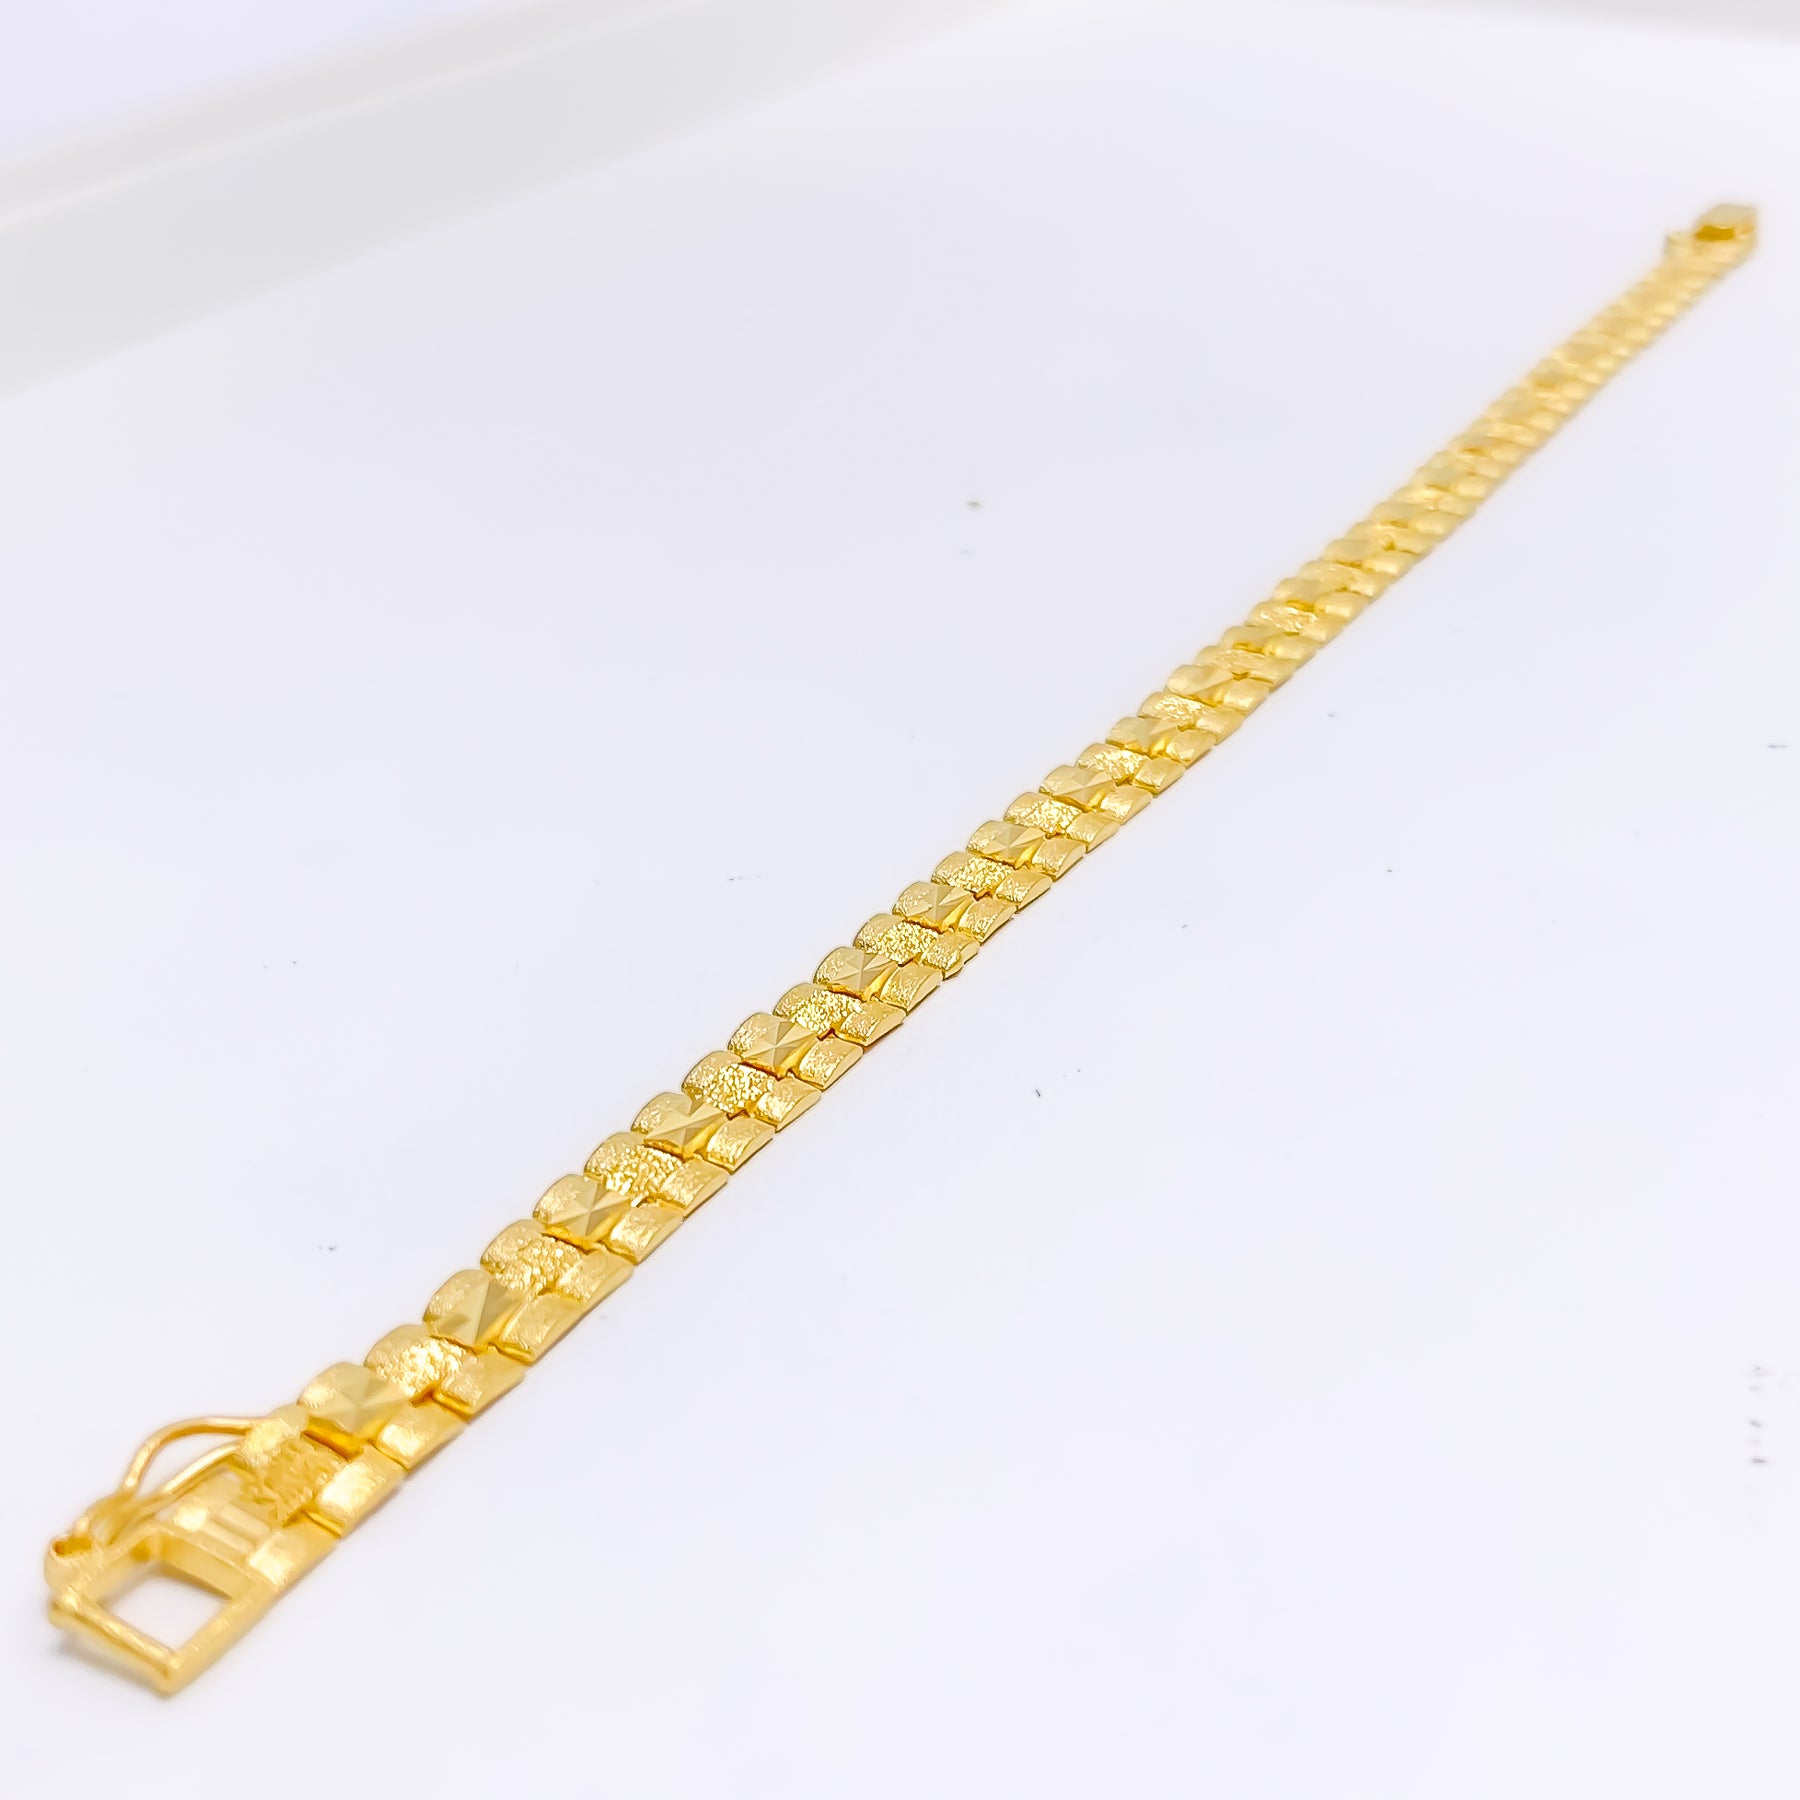 High Quality Design Gold Plated Bracelet for Men BR-079 – Rudraksh Art  Jewellery